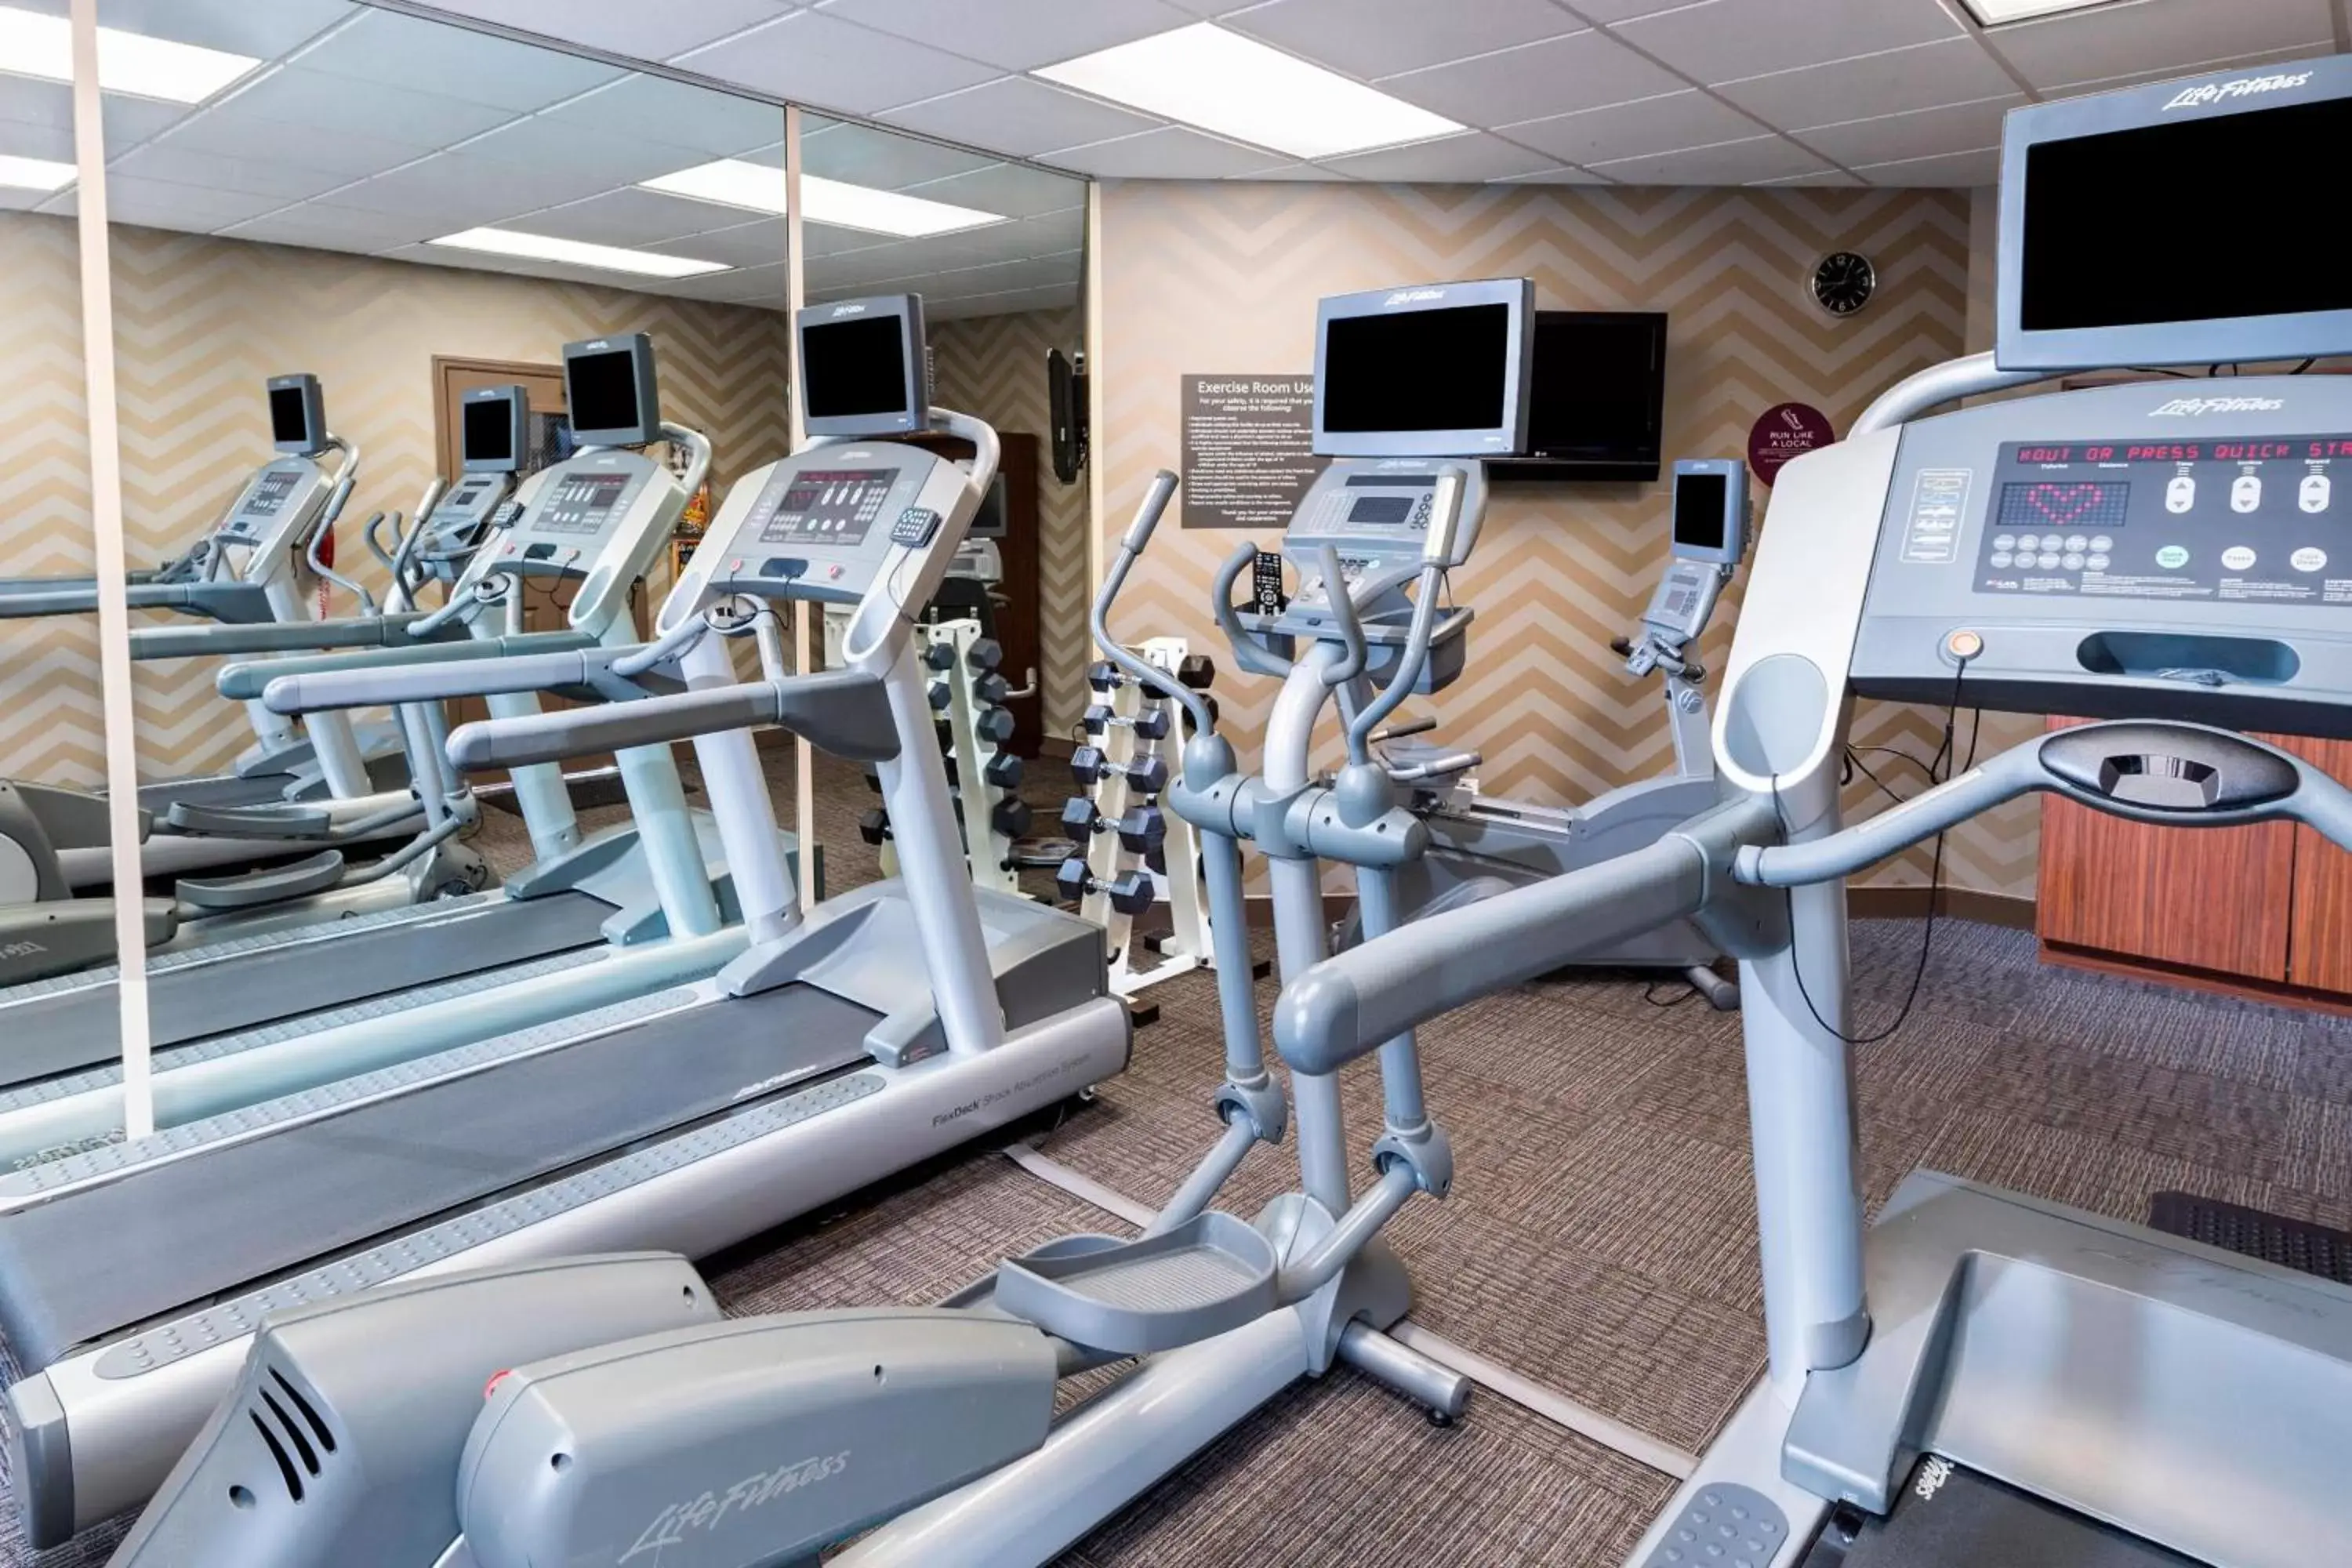 Fitness centre/facilities, Fitness Center/Facilities in Residence Inn Huntsville